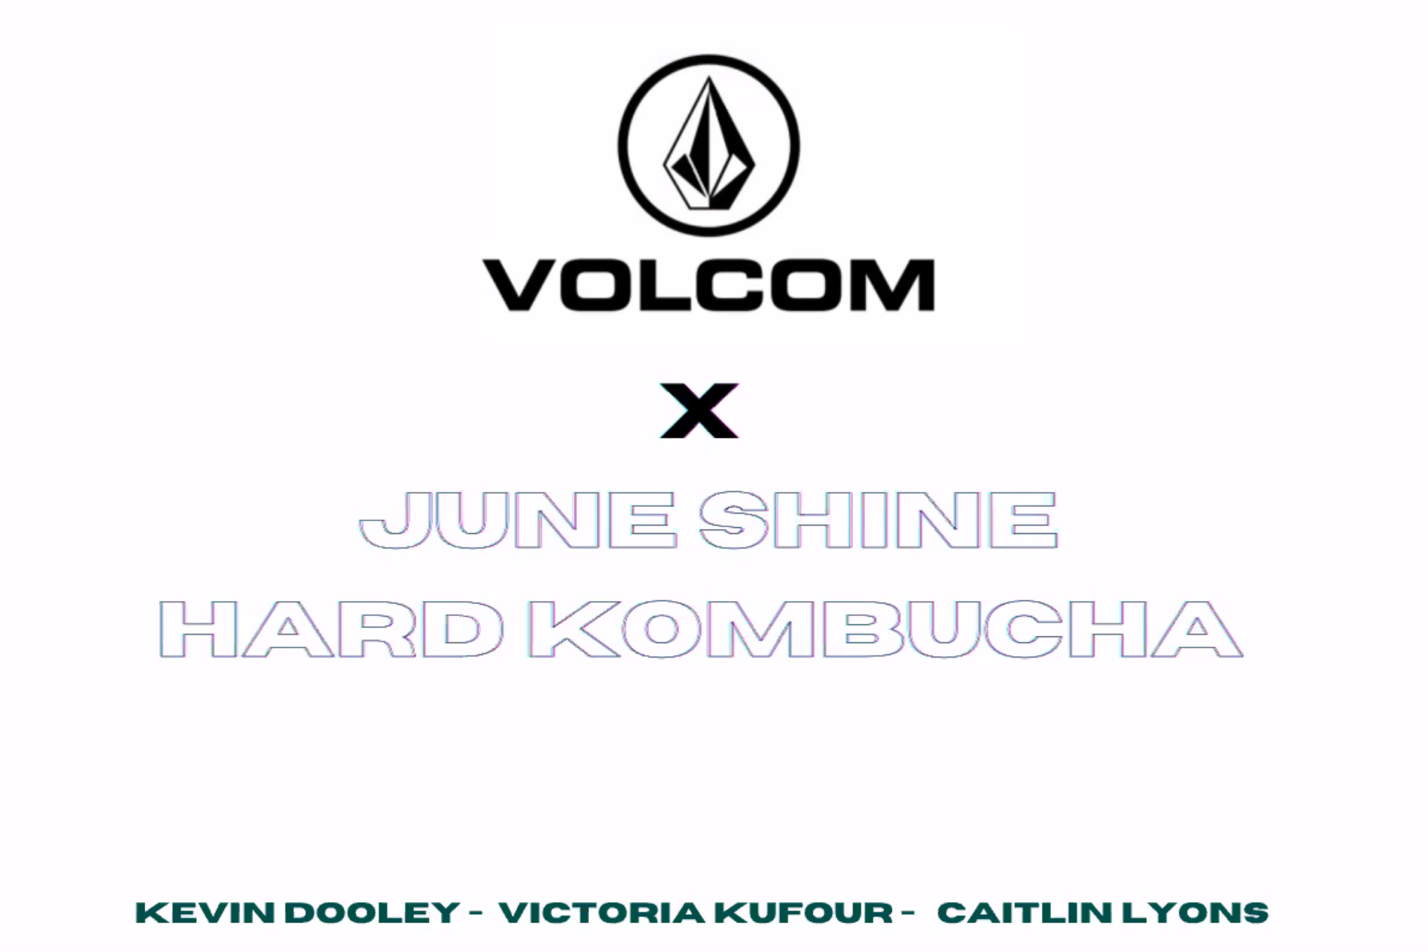 Volcom and Juneshine Hard Kombucha